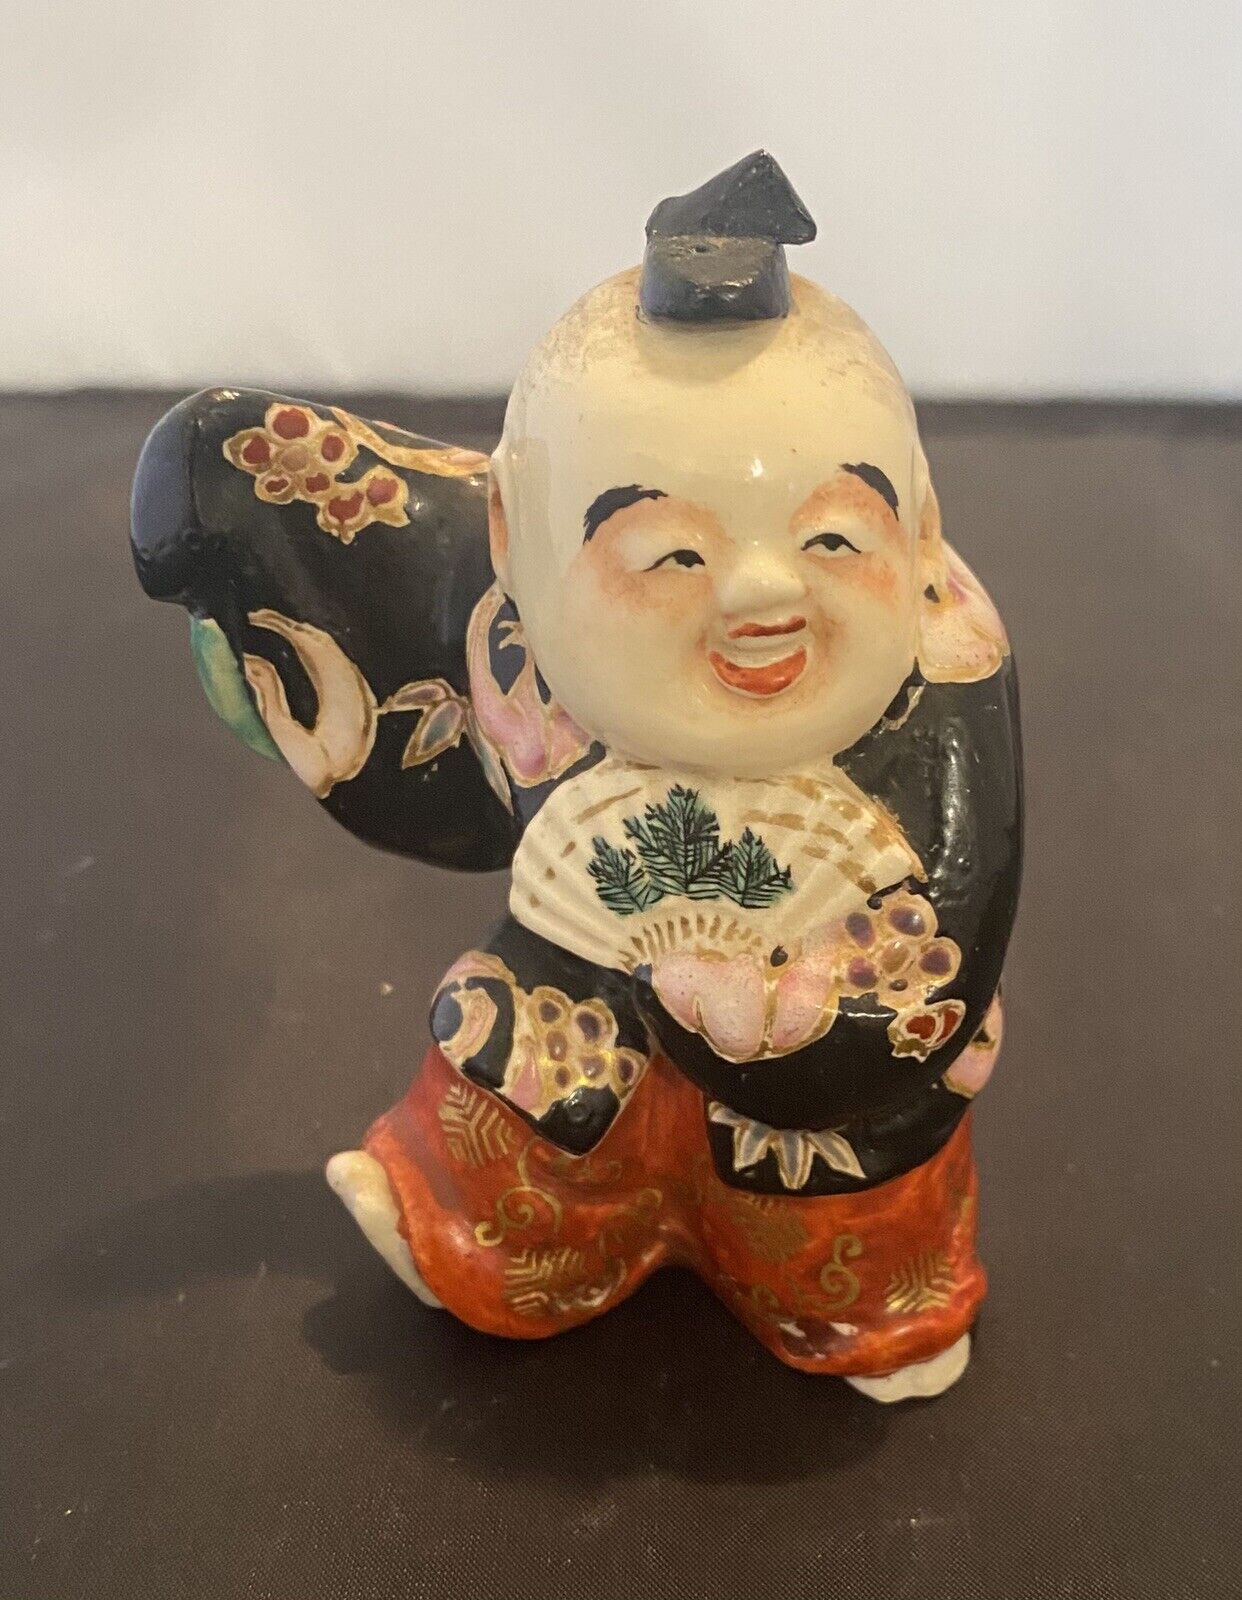 Vintage Porcelain Japanese Handpaintes Man Figurine